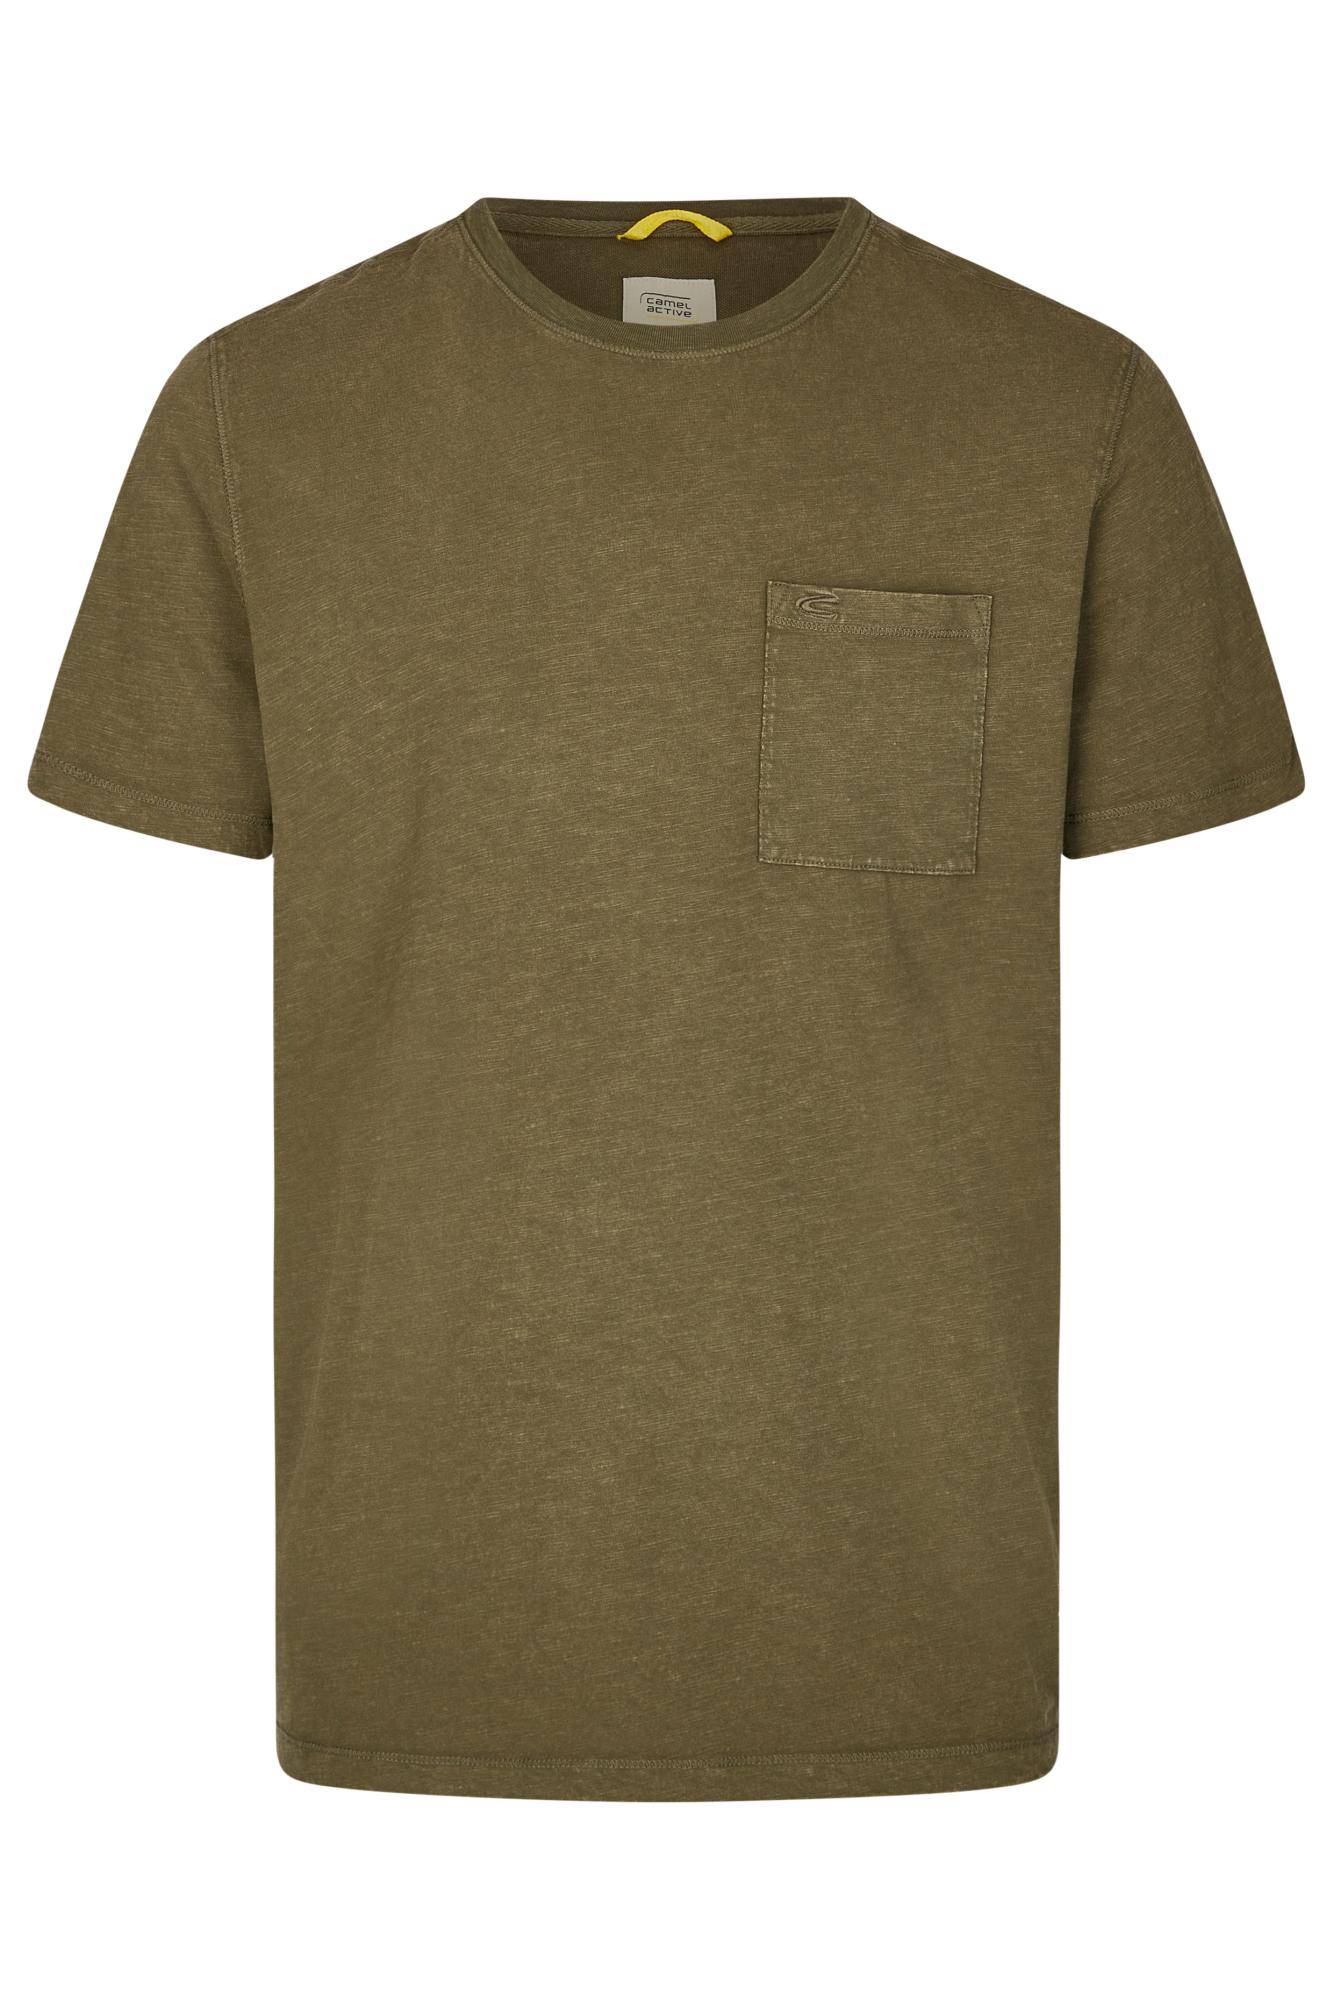 Мужская футболка Camel Active, коричневая, цвет коричневый, размер 44 - фото 1